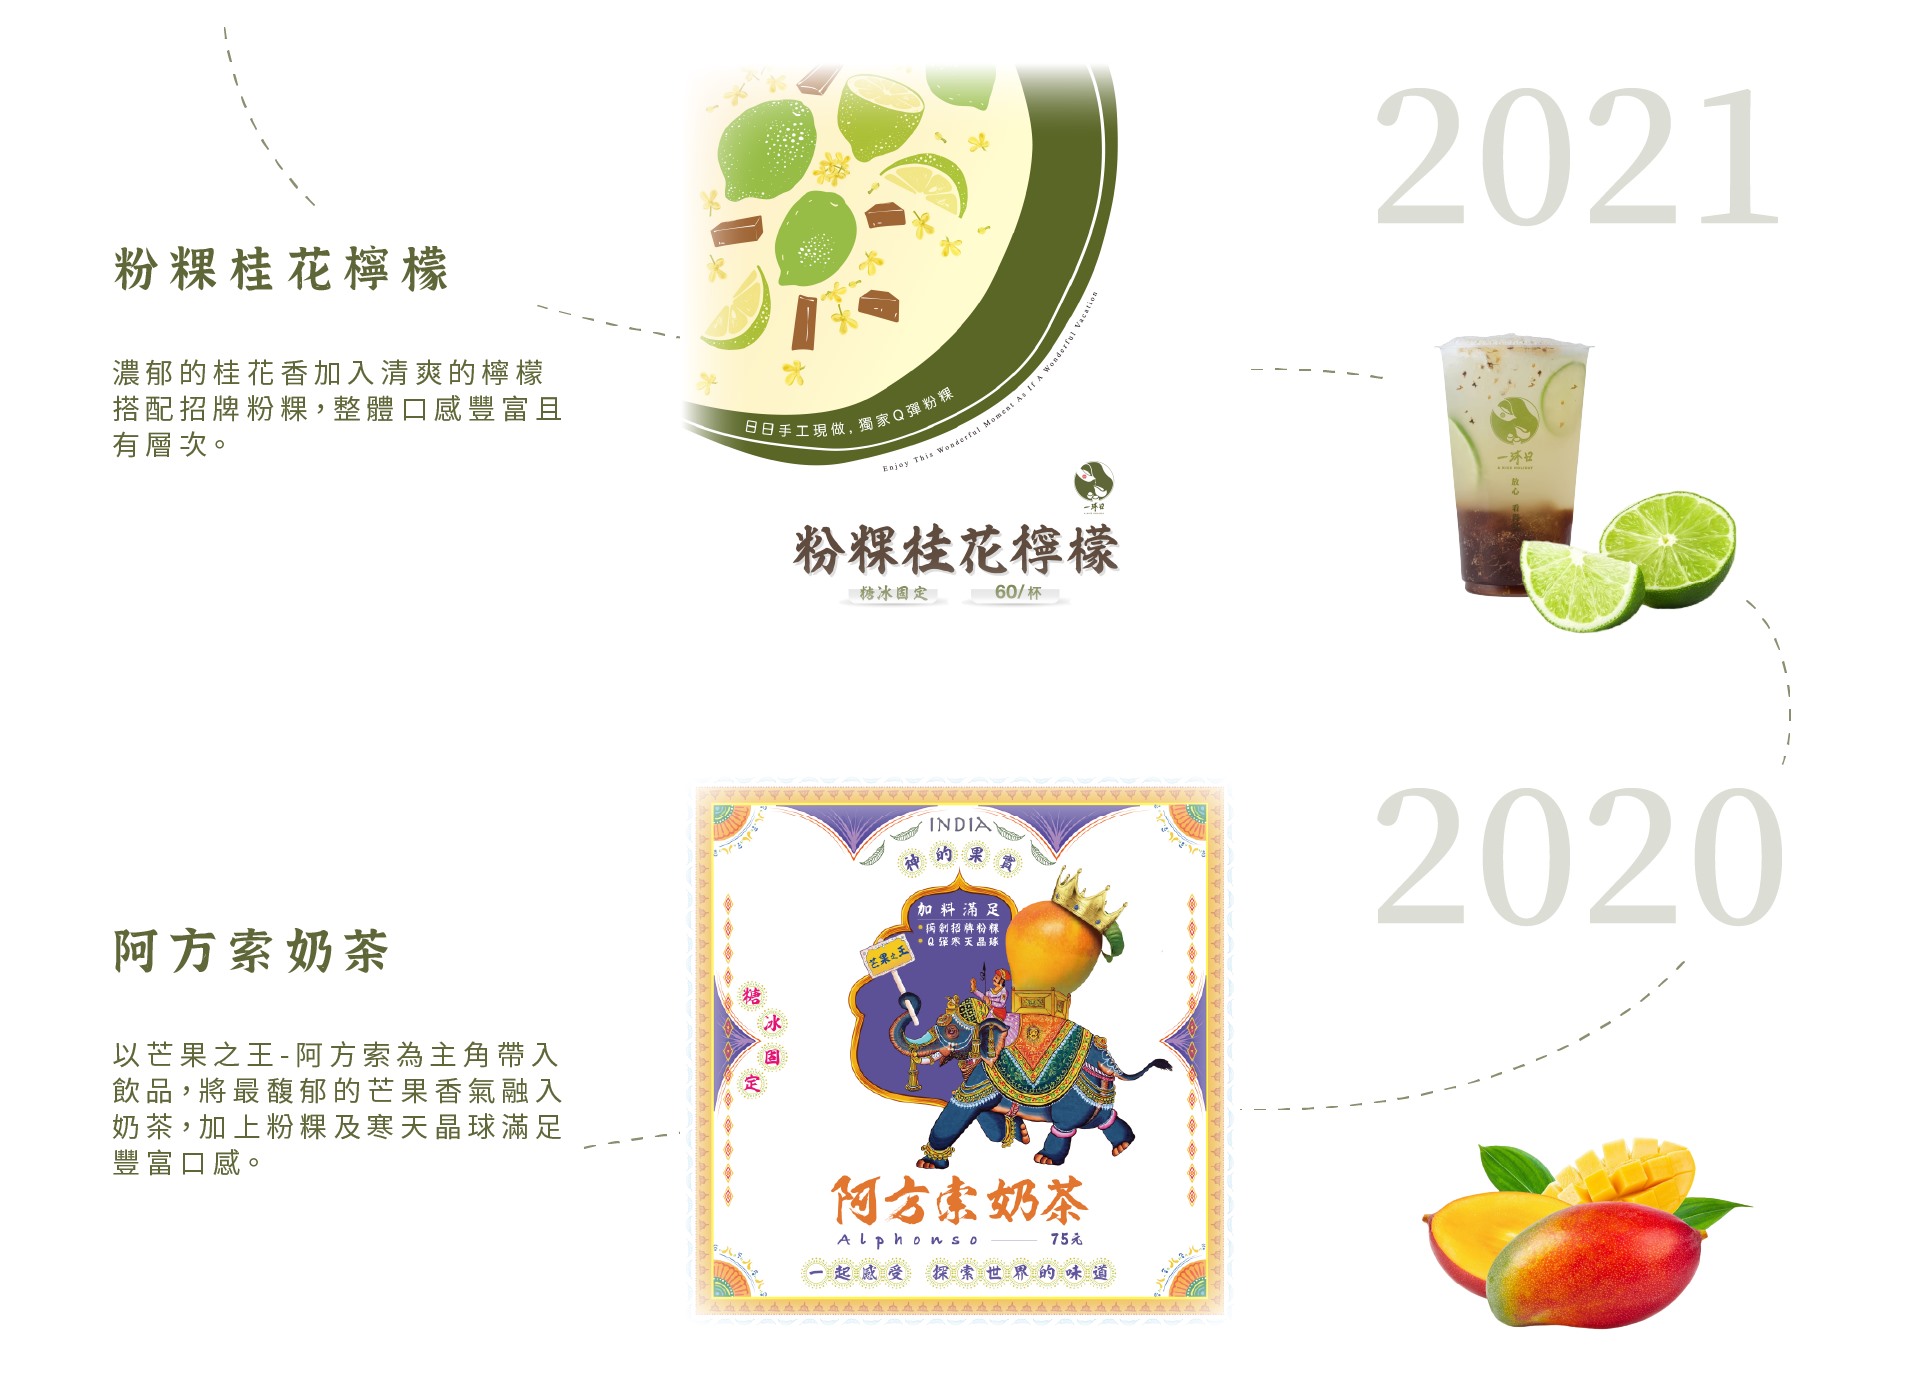 一沐日 2020-2021年度飲品推薦-粉粿桂花檸檬、阿方索奶茶